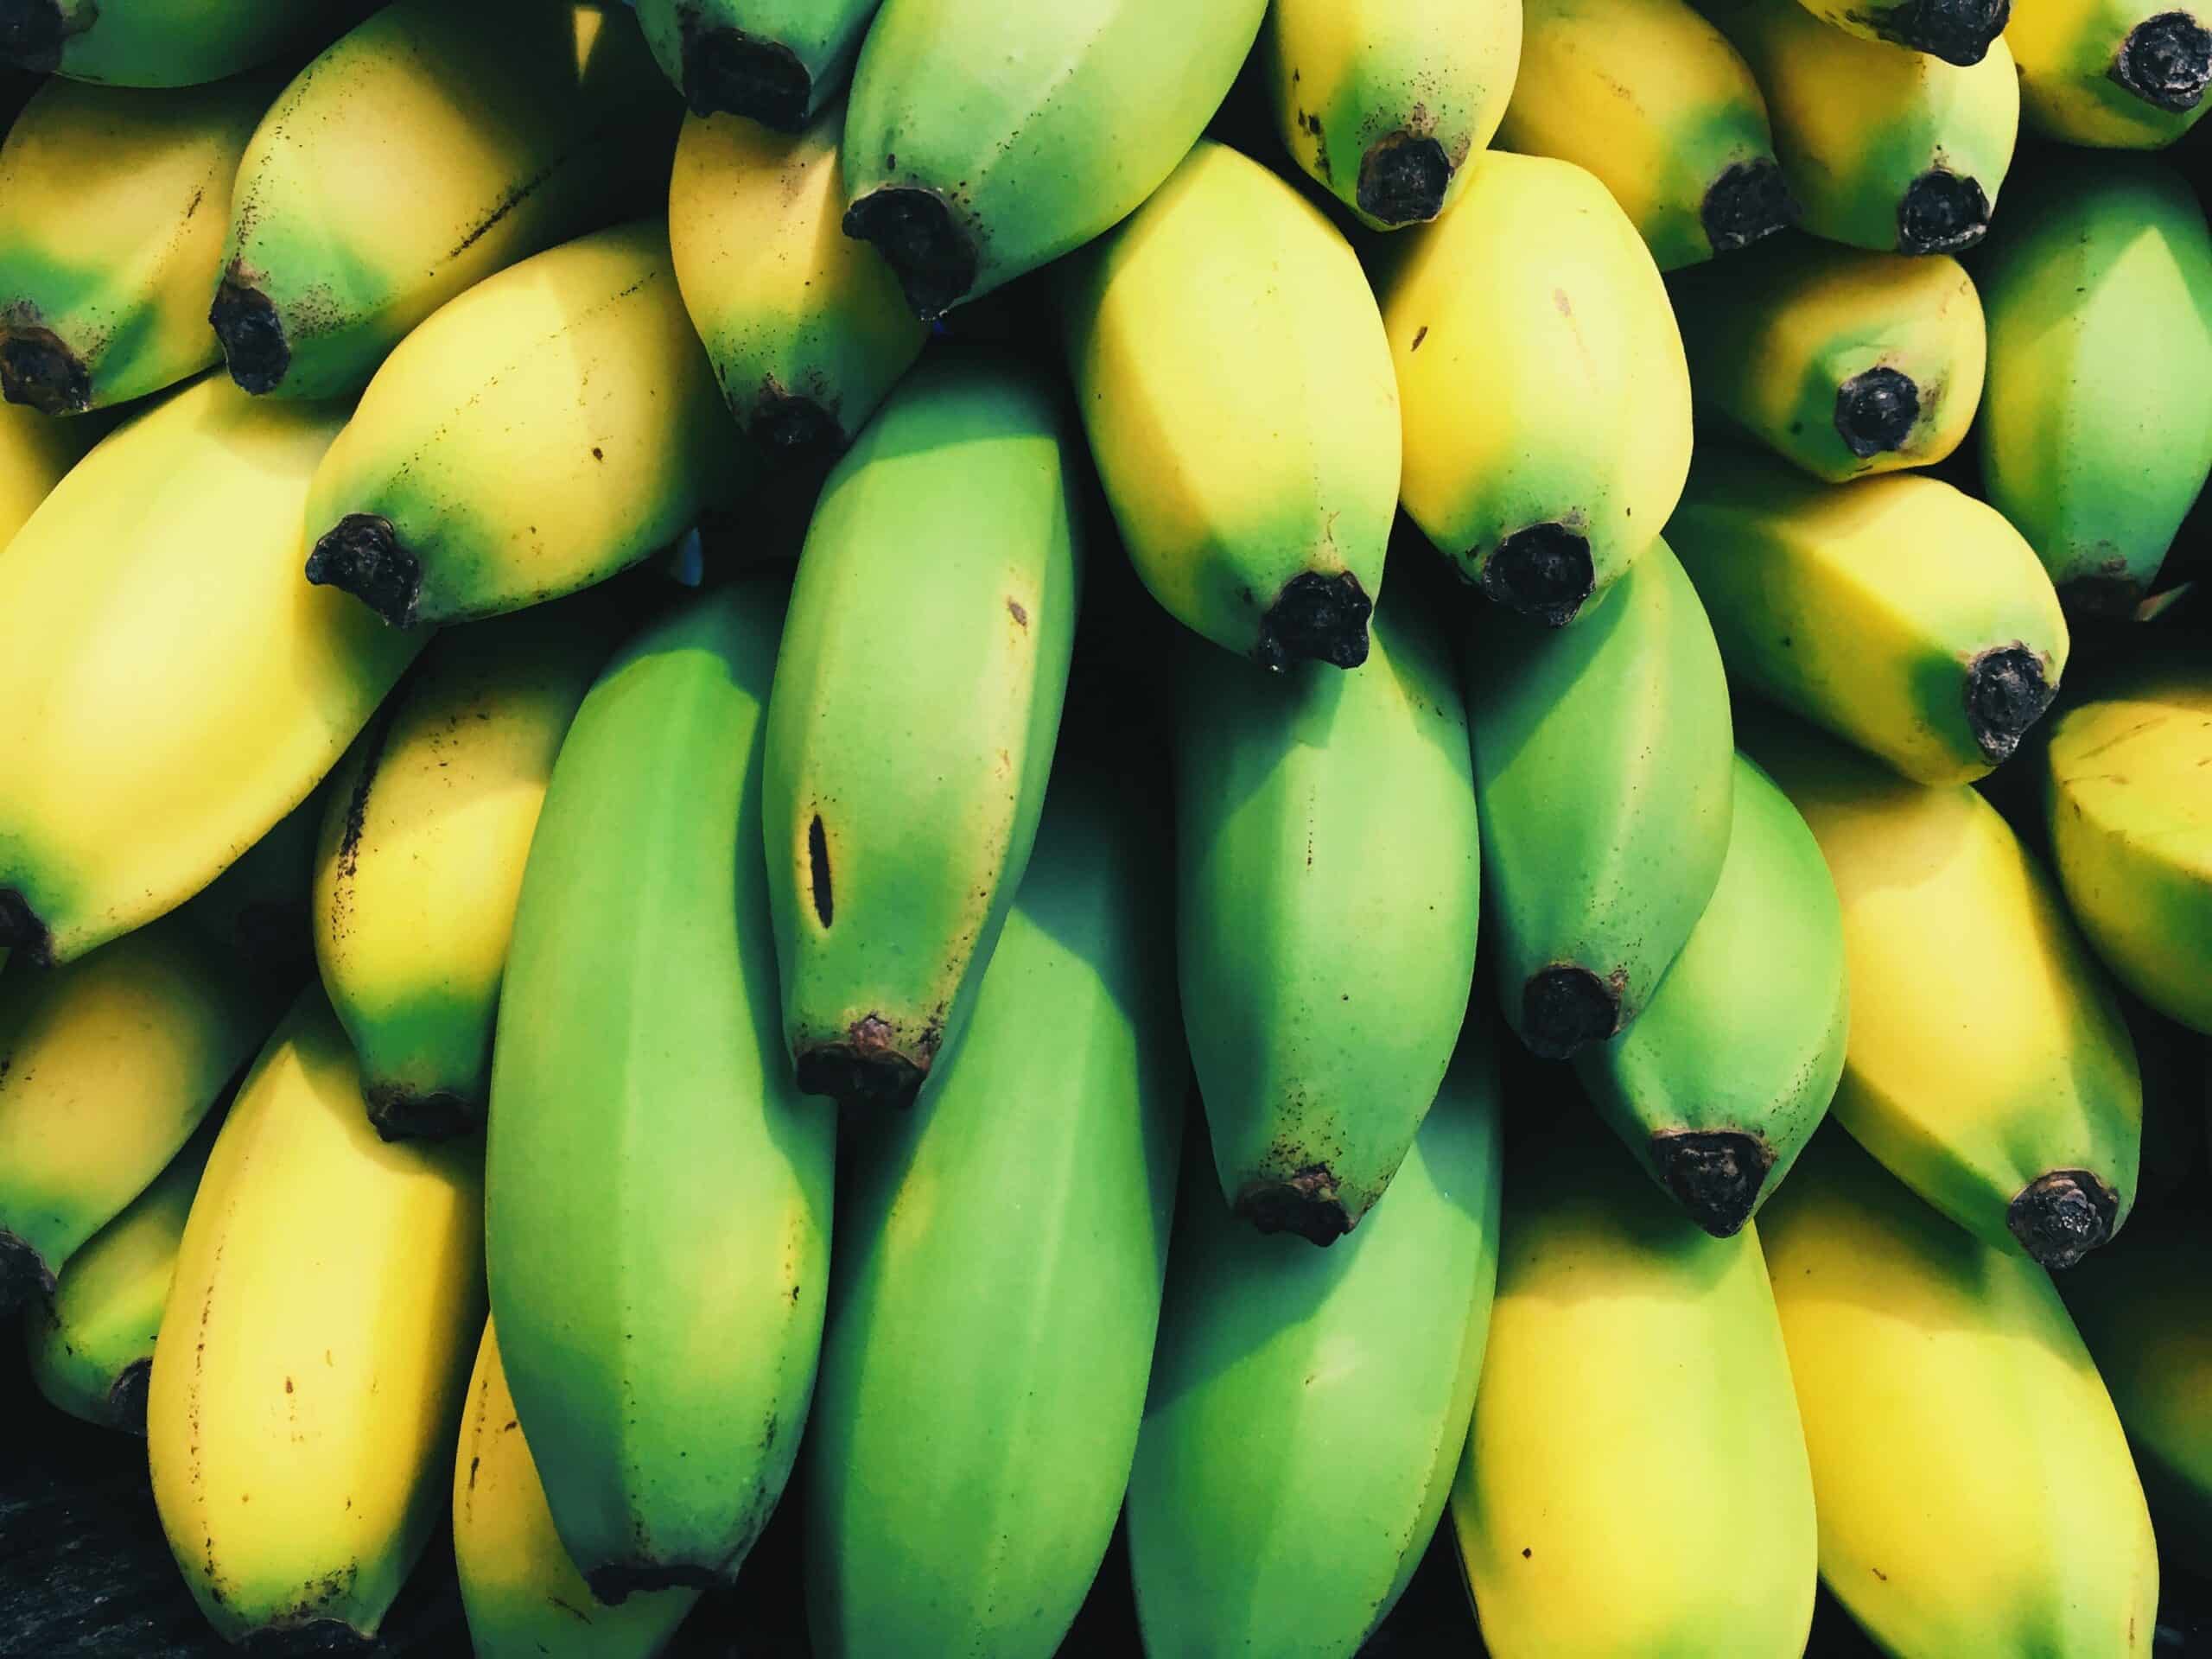 amido nelle banane riduce i tumori cinque gusti